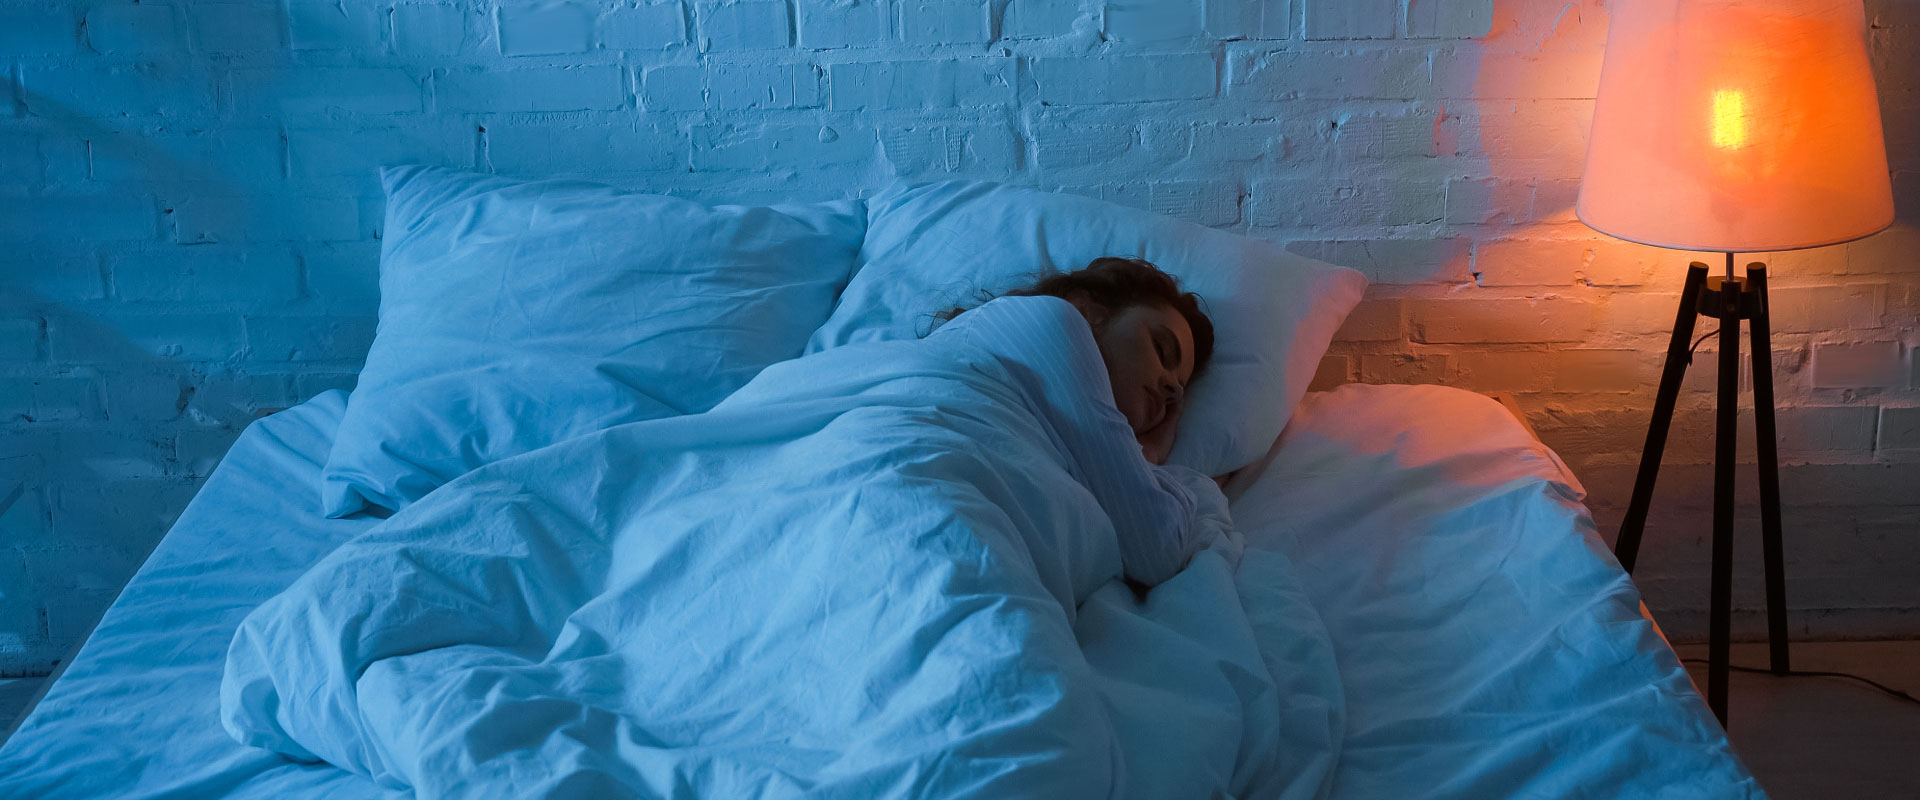 Entspannte Person schläft friedlich, umgeben von sanftem Licht, symbolisiert Wohlbefinden durch Nährstoffe.